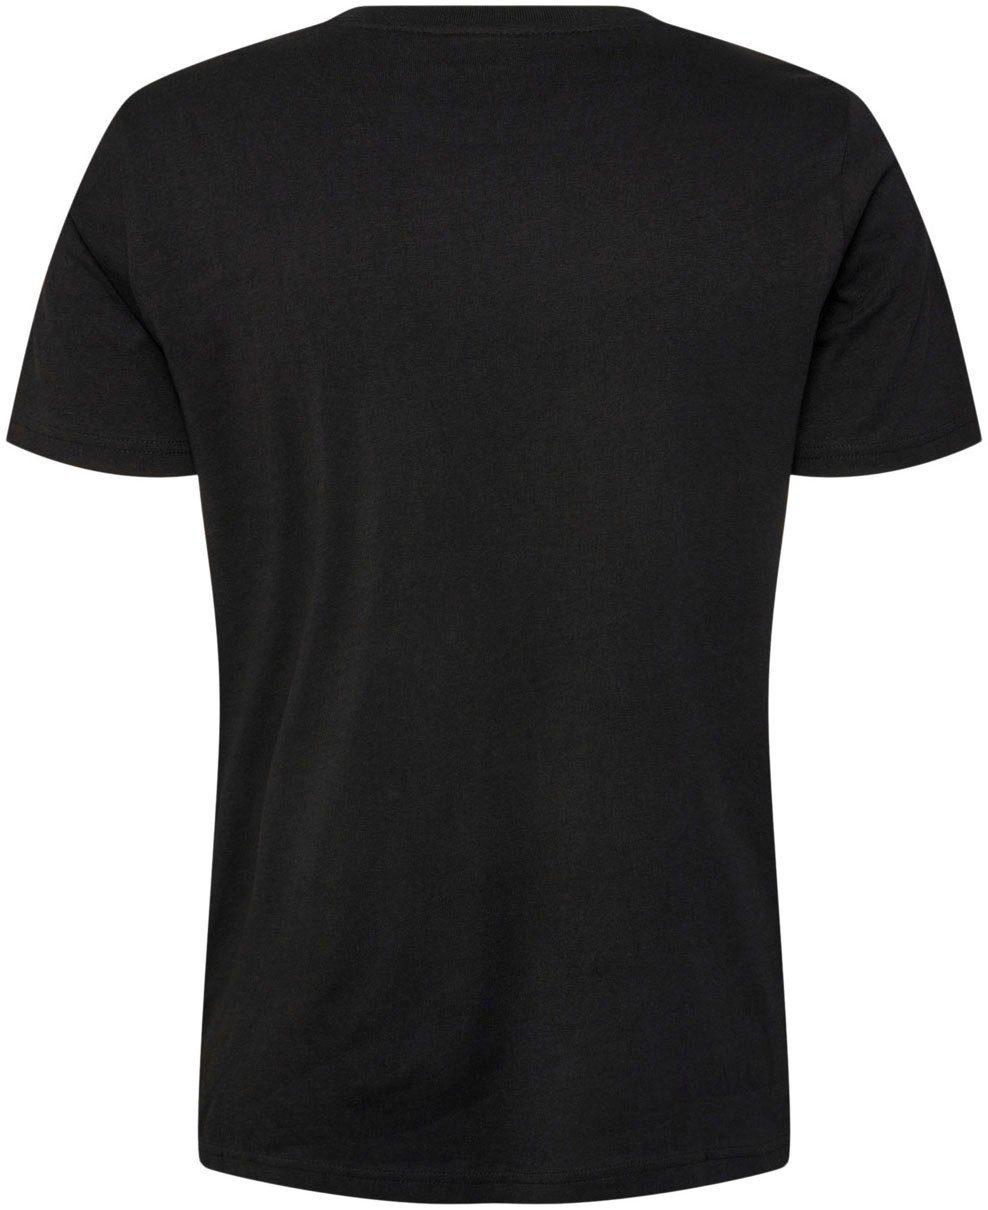 BLACK T-SHIRT ICONS hummel T-Shirt